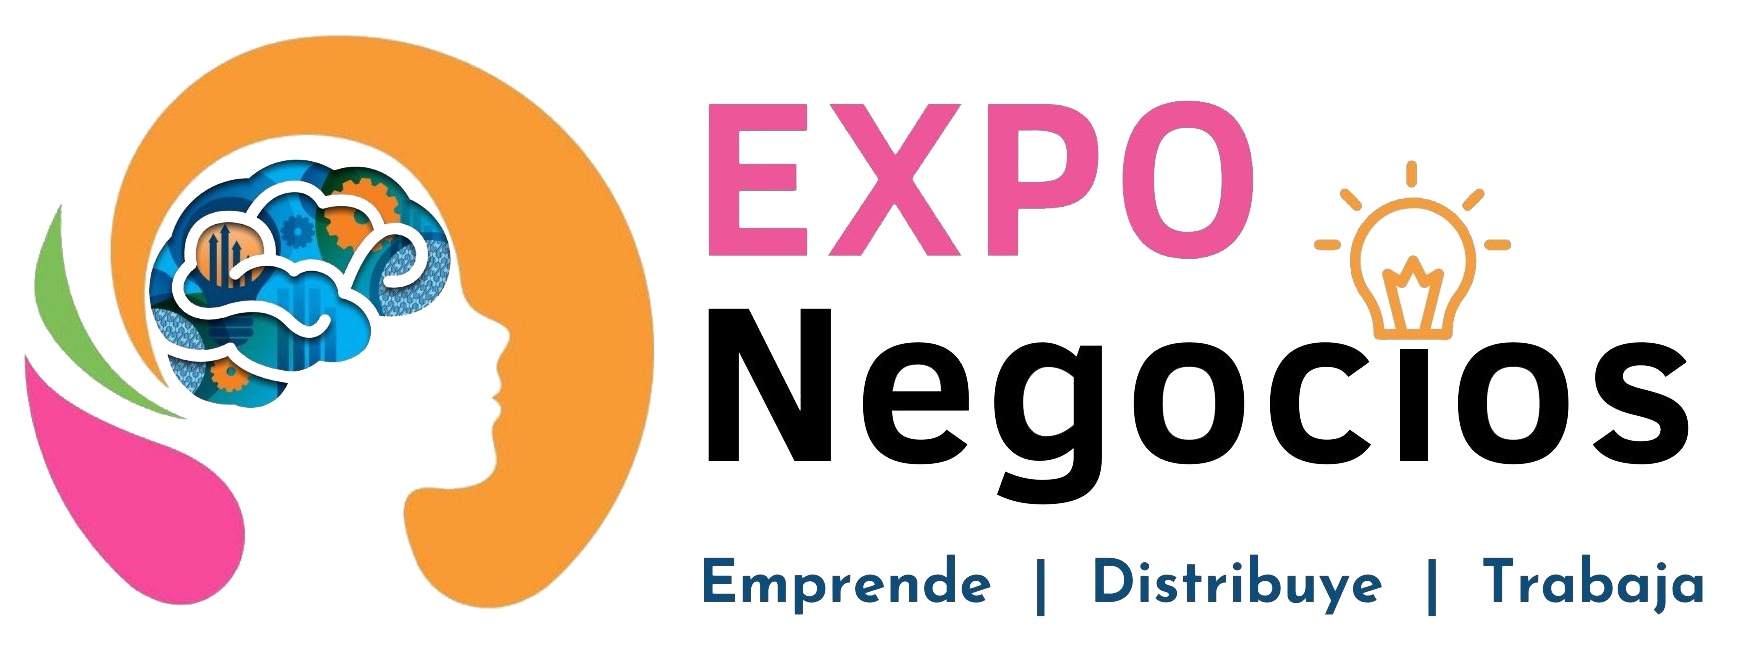 Expo Negocios Mexico